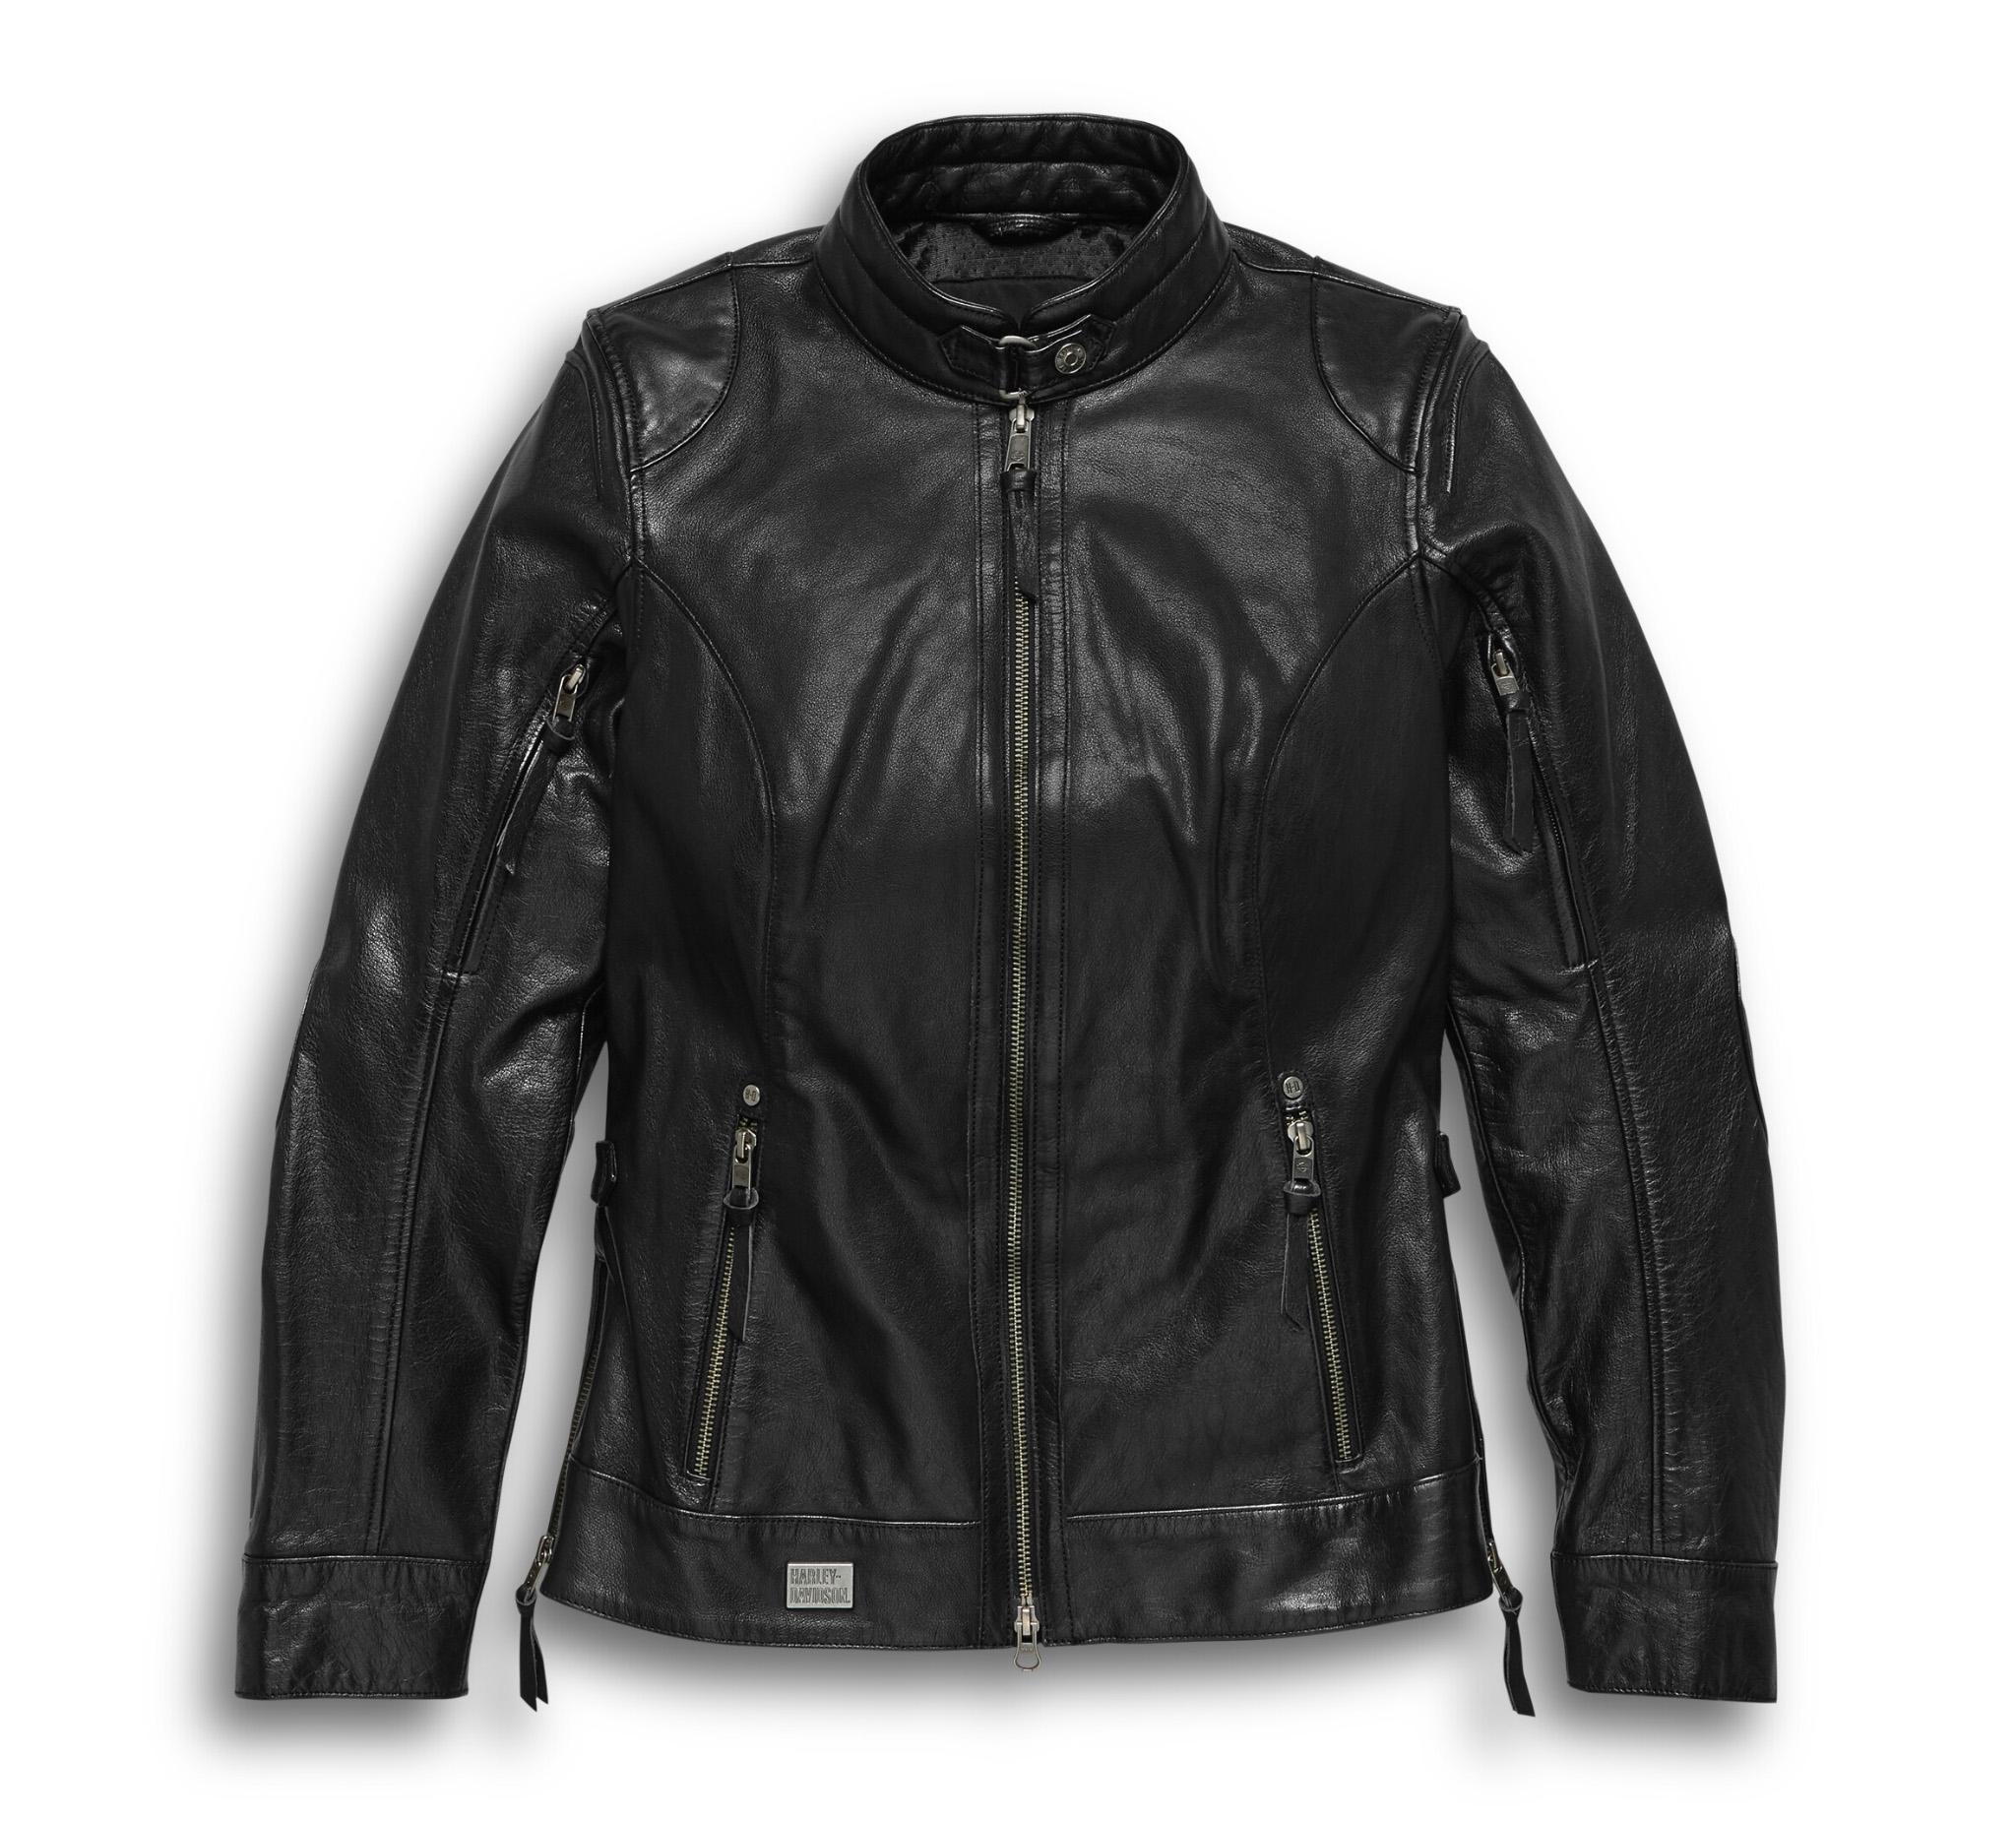 Maker of Jacket Biker Jackets Vintage 90 Black Flame Leather